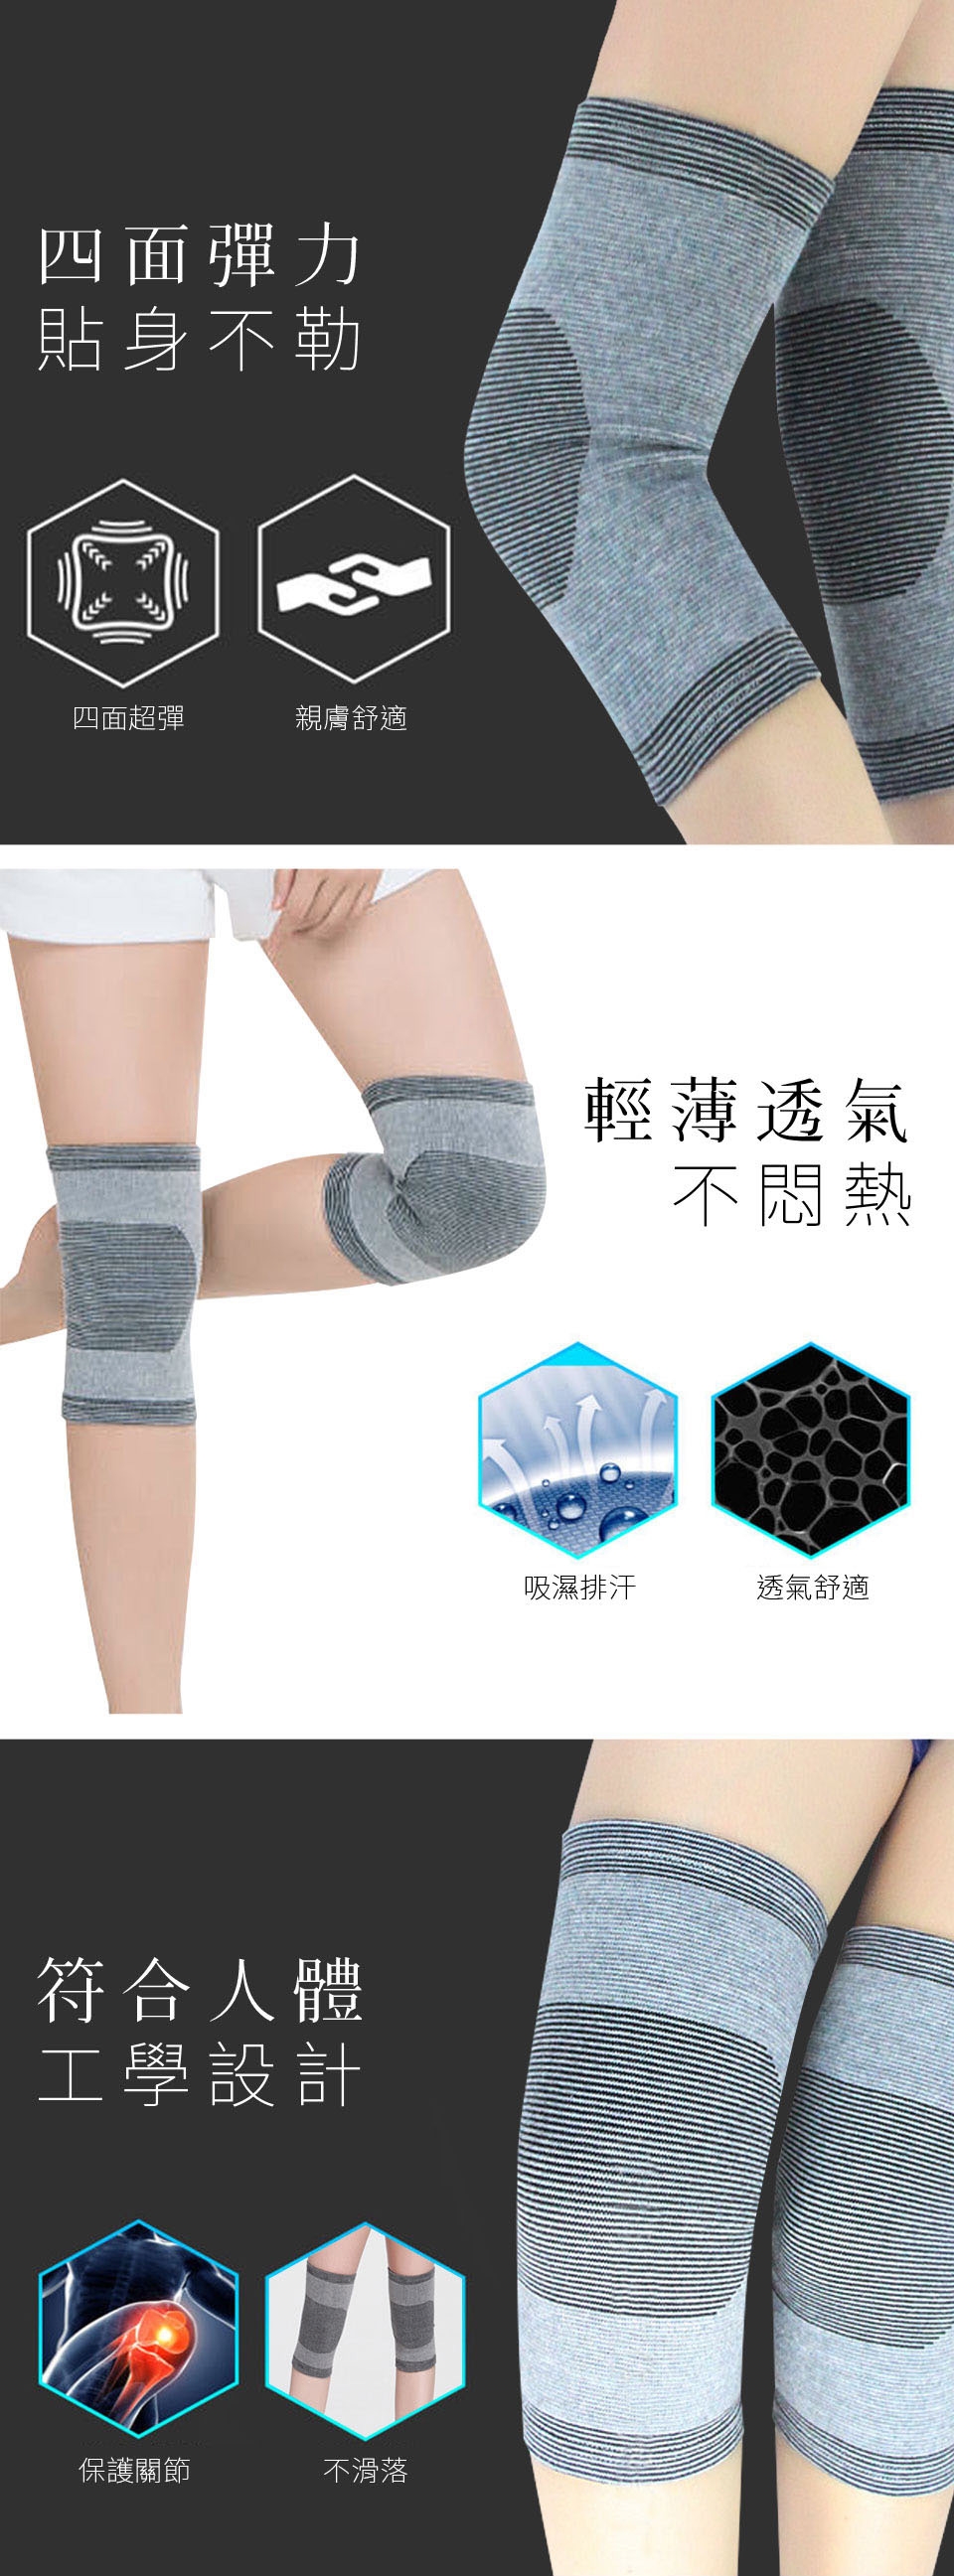 【Yi-sheng】*發燒新品*健康減壓護脊板挺背帶(611美背+CC膝腕)